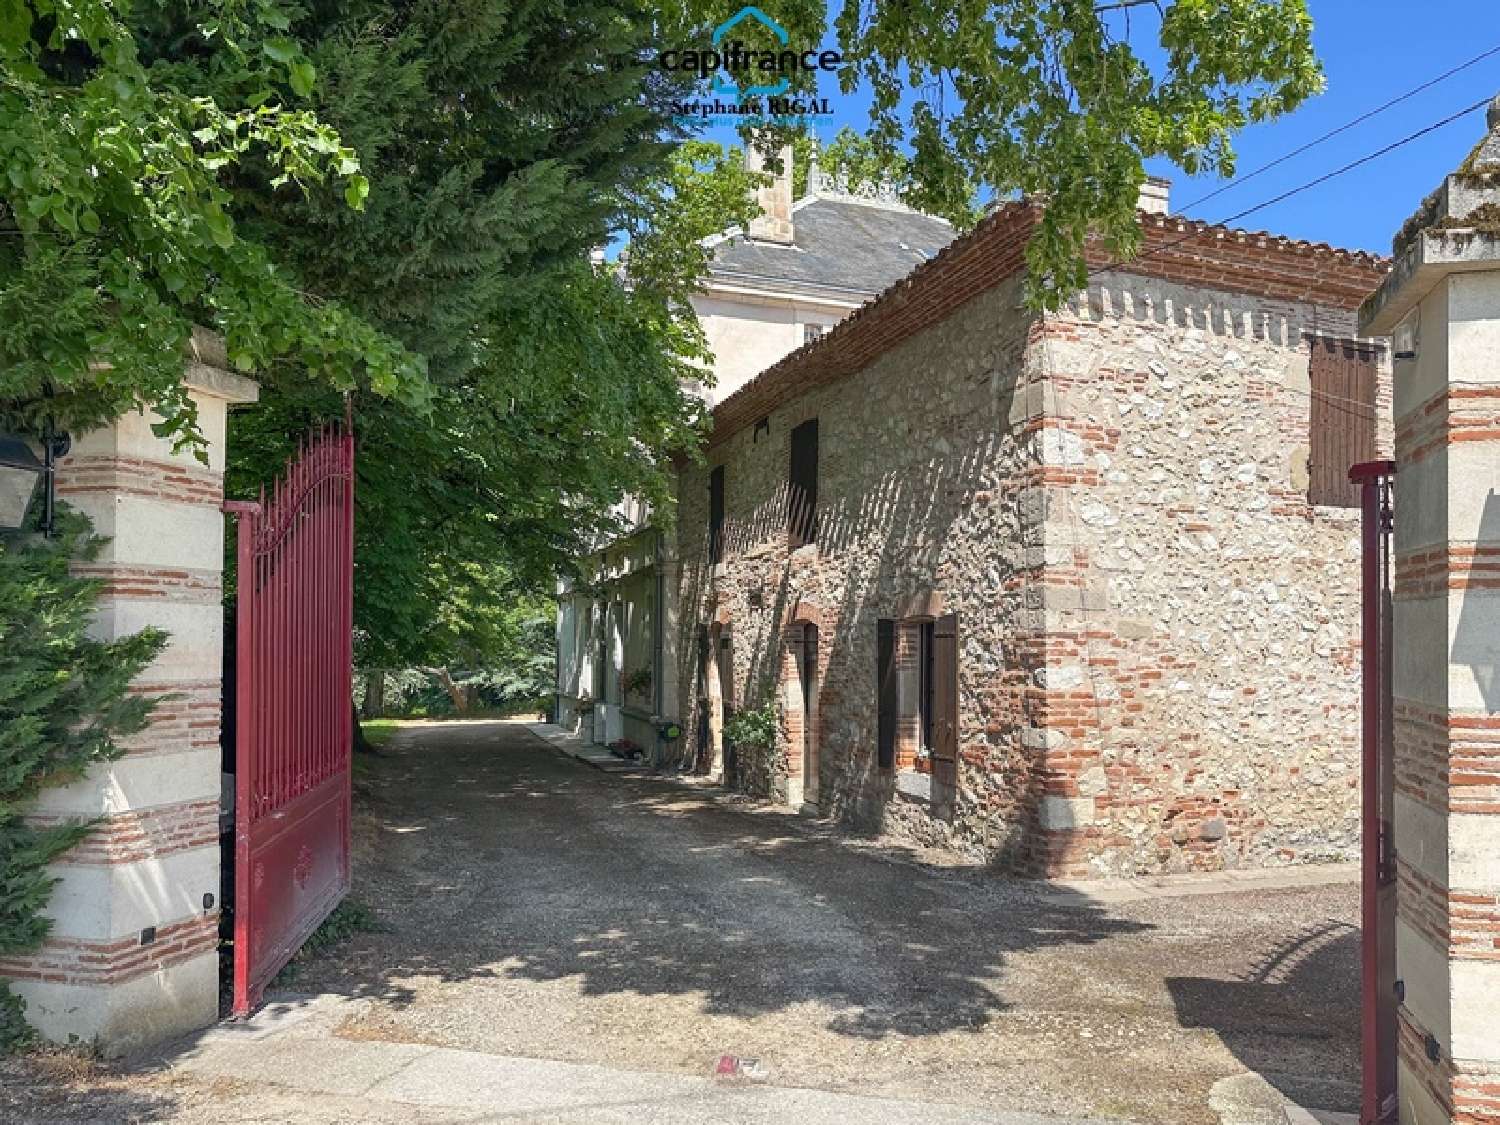  à vendre maison bourgeoise Villeneuve-sur-Lot Lot-et-Garonne 2